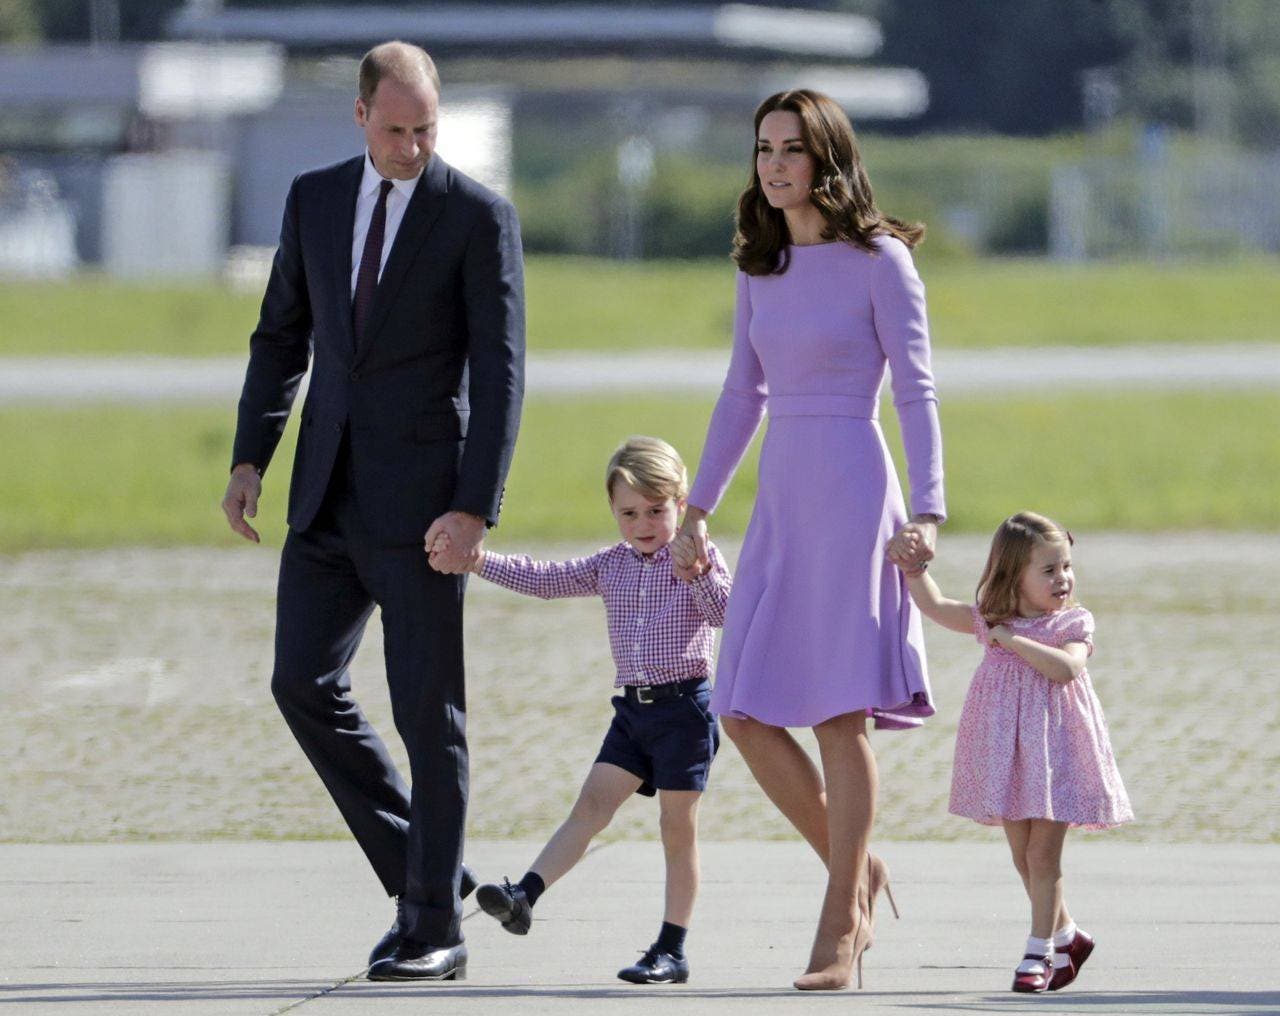 Los duques de Cambridge esperan su tercer hijo